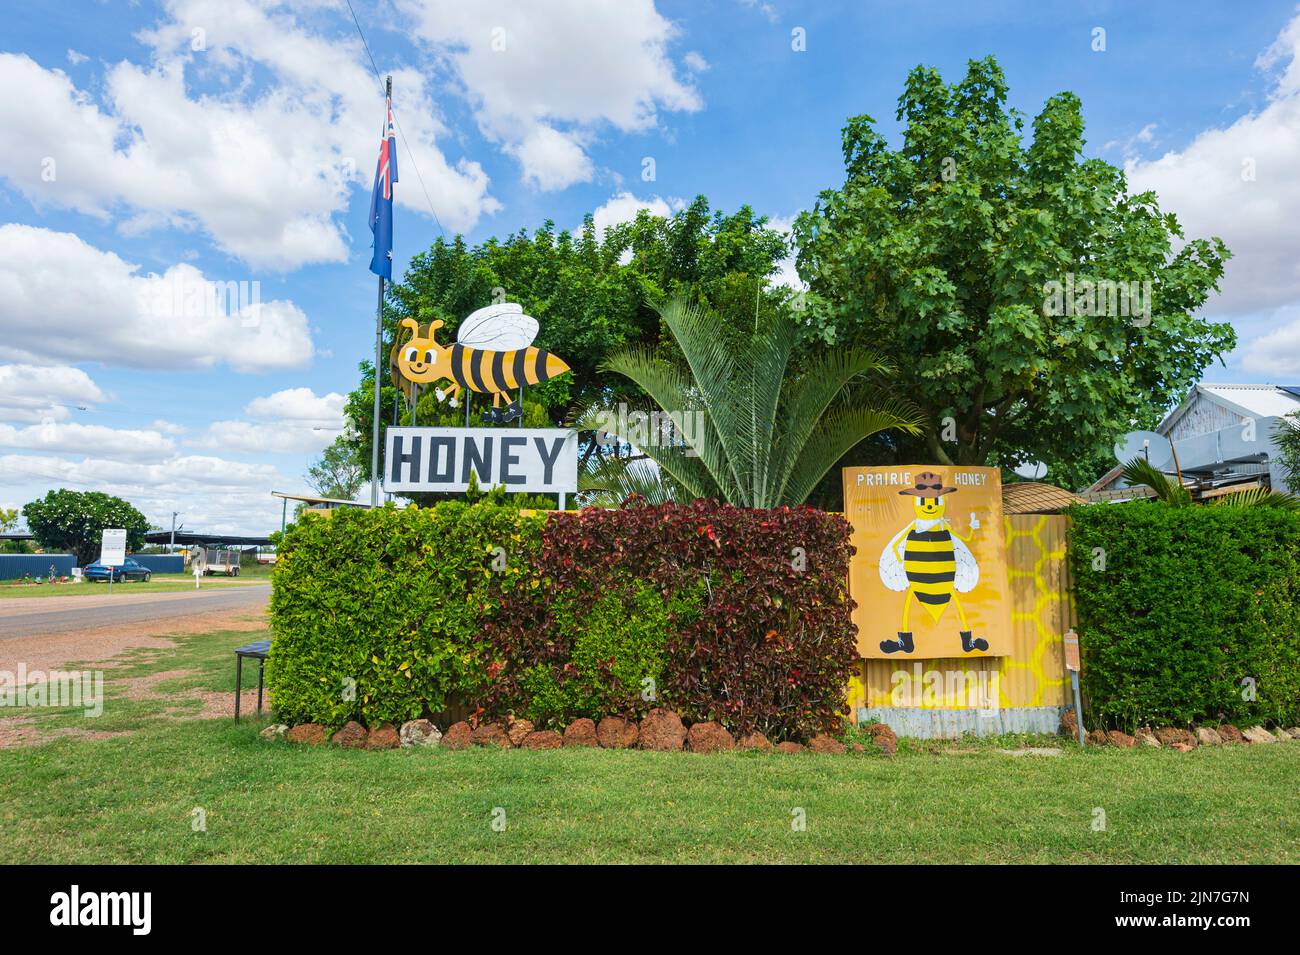 Firme anunciando la venta de miel en Prairie, Queensland, Queensland, Australia Foto de stock